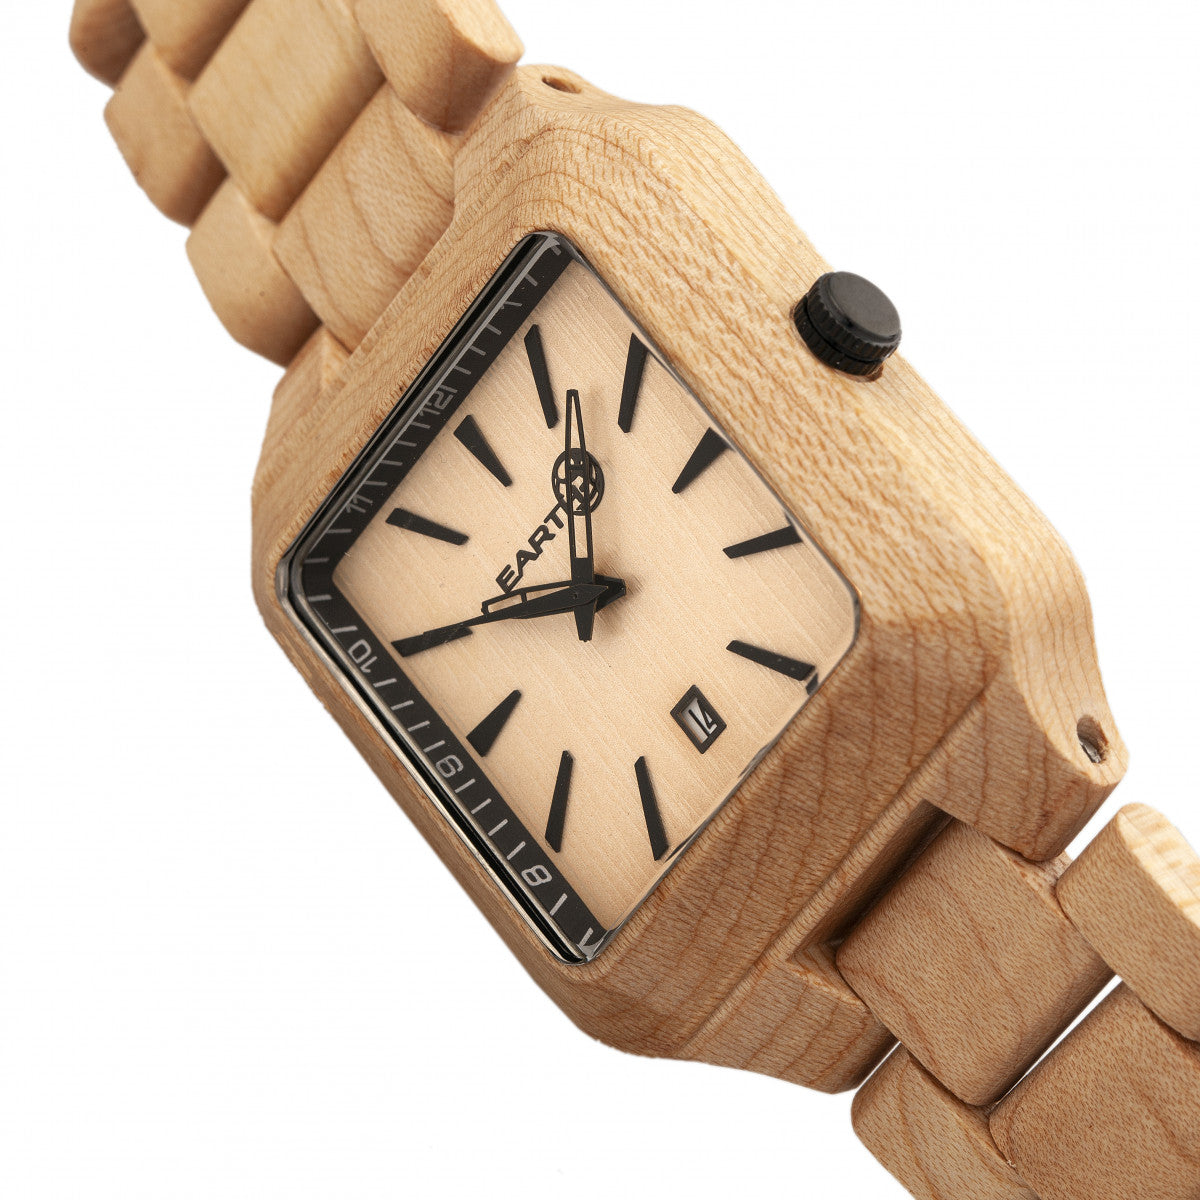 Earth Wood Arapaho Bracelet Watch w/Date - Khaki/Tan - ETHEW3601